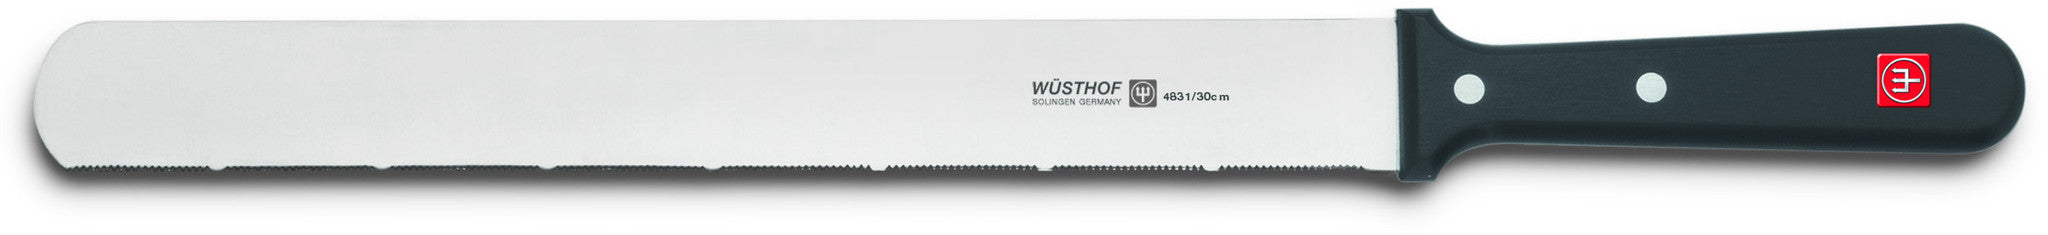 Wüsthof Gourmet Baker's Knife 11.5"